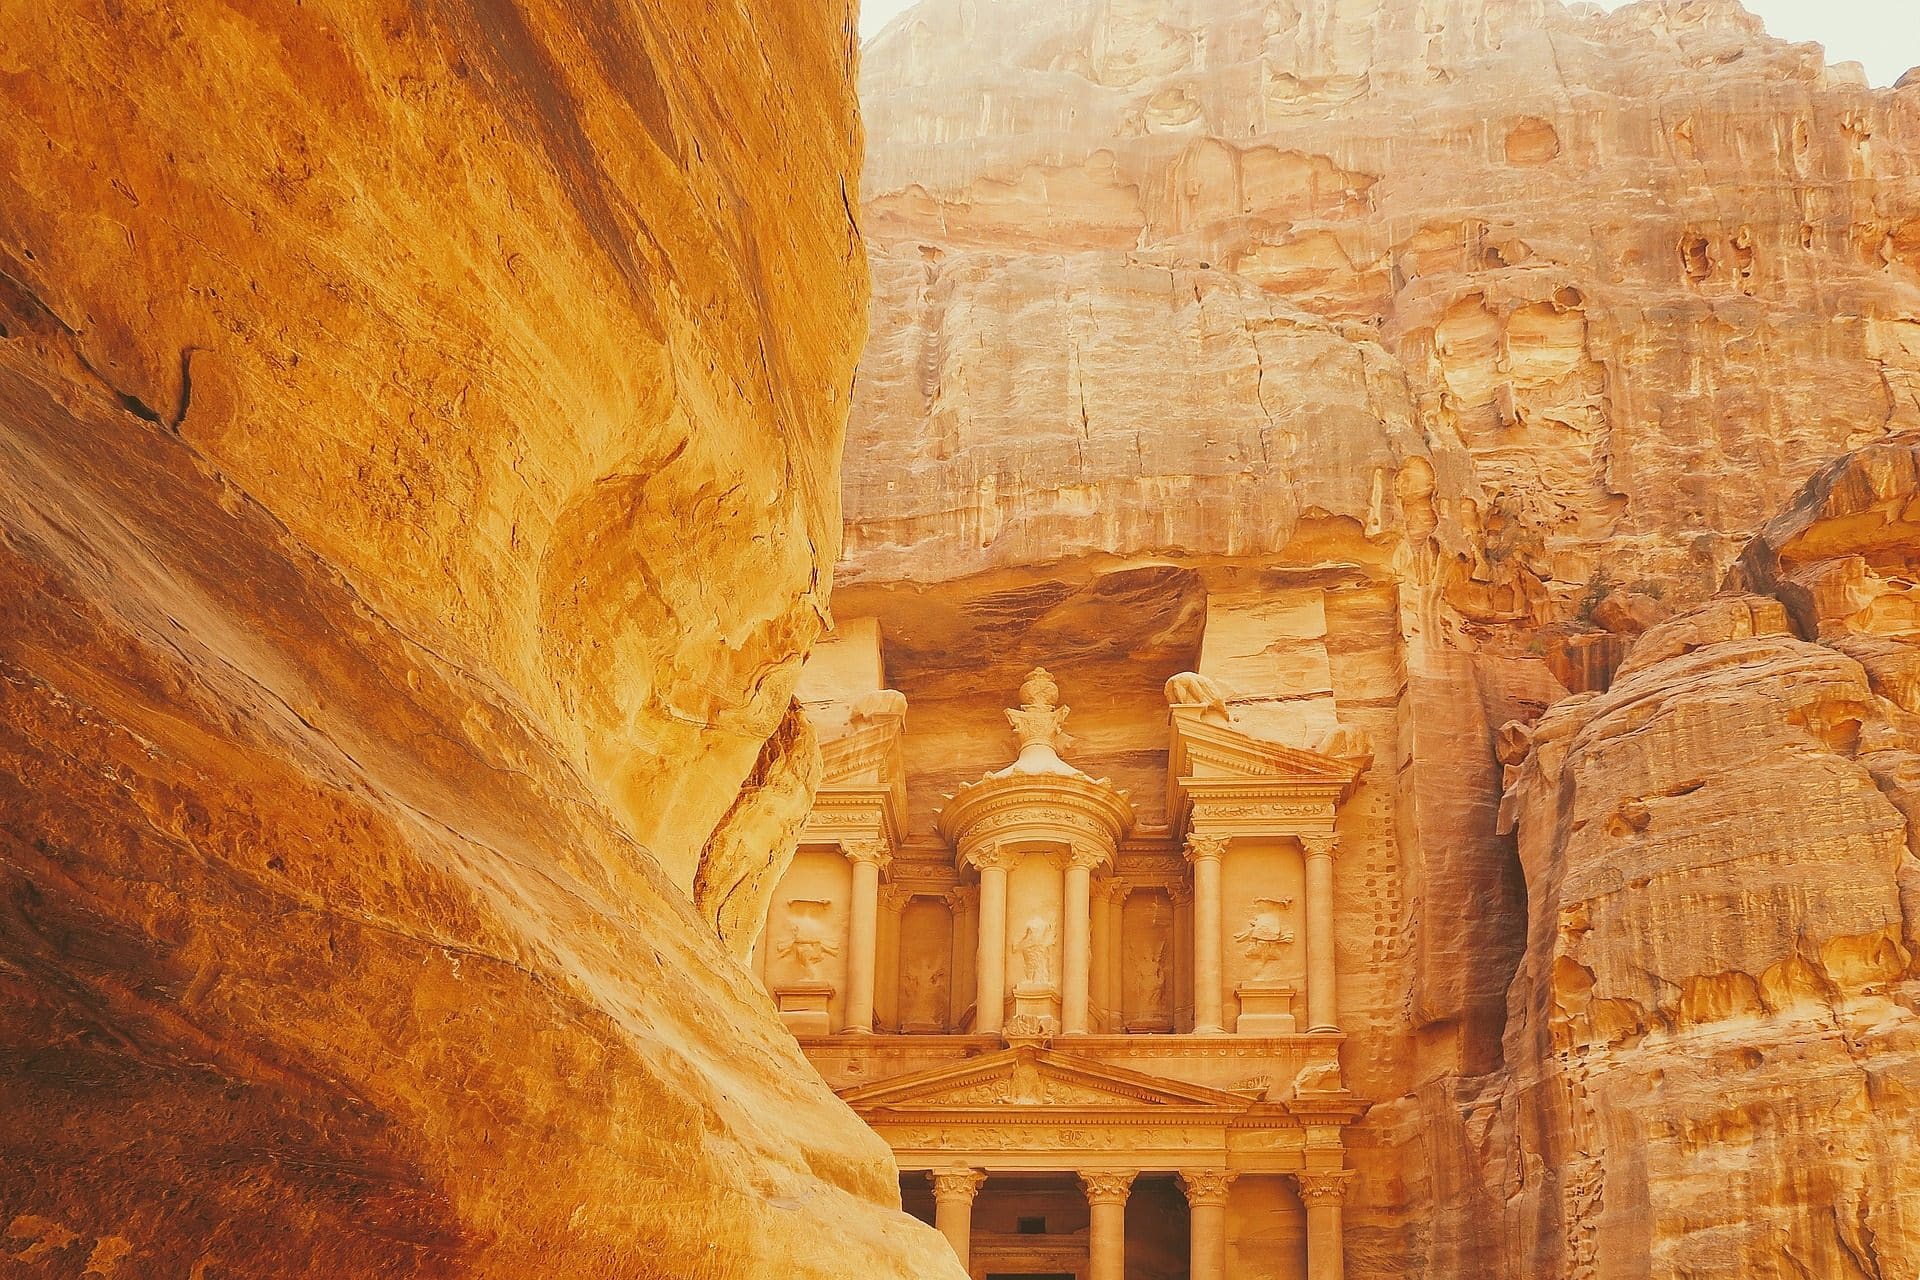 Is Jordan Safe for Travel? A Definitive 